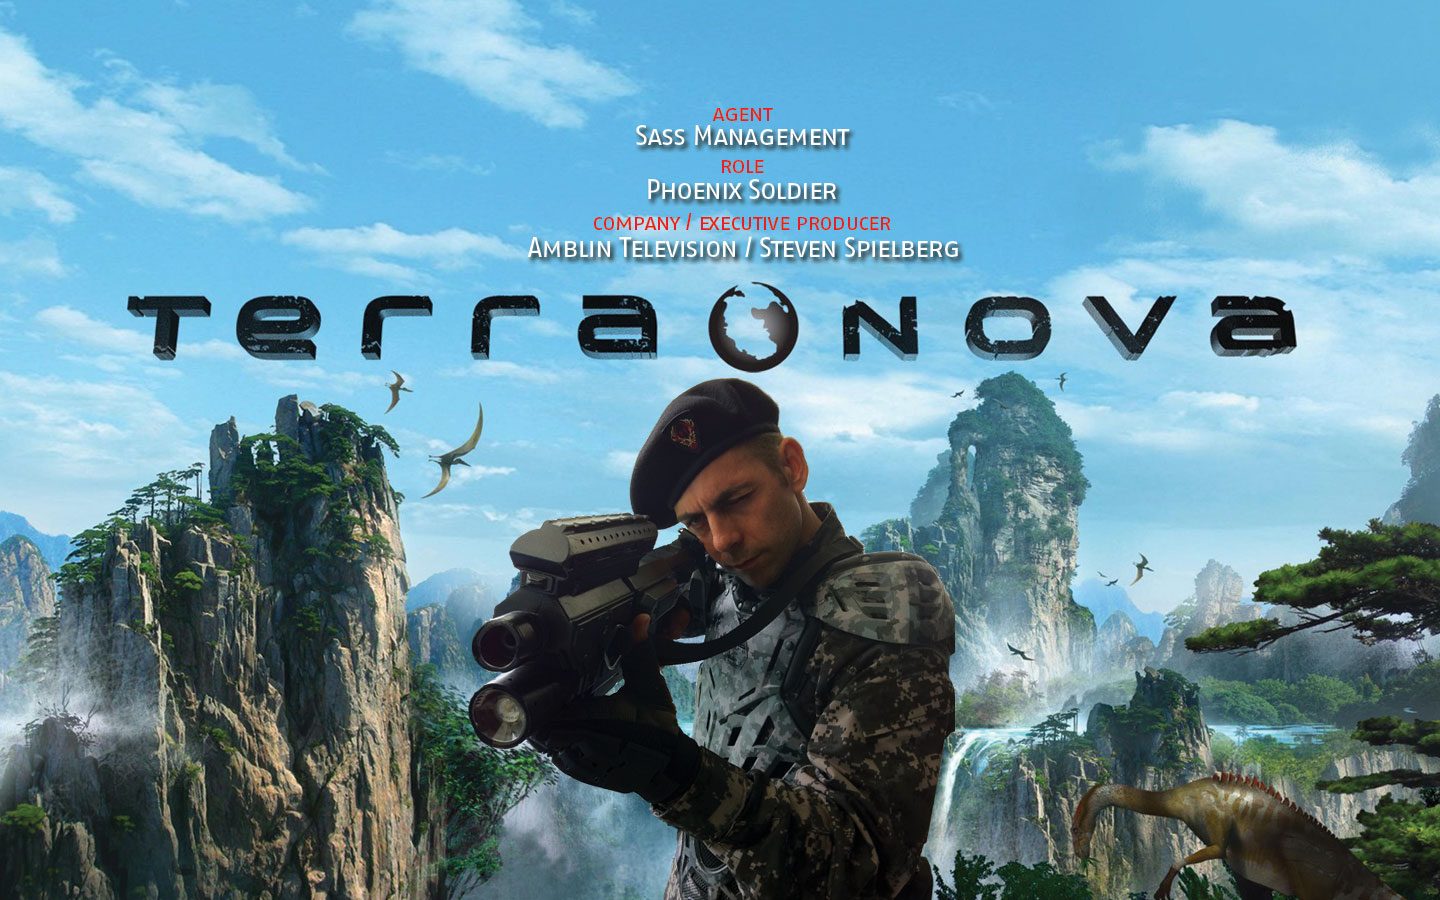 2011-09-12  Terra Nova role: Phoenix Soldier company/director: Amblin Television / Steven Spielberg